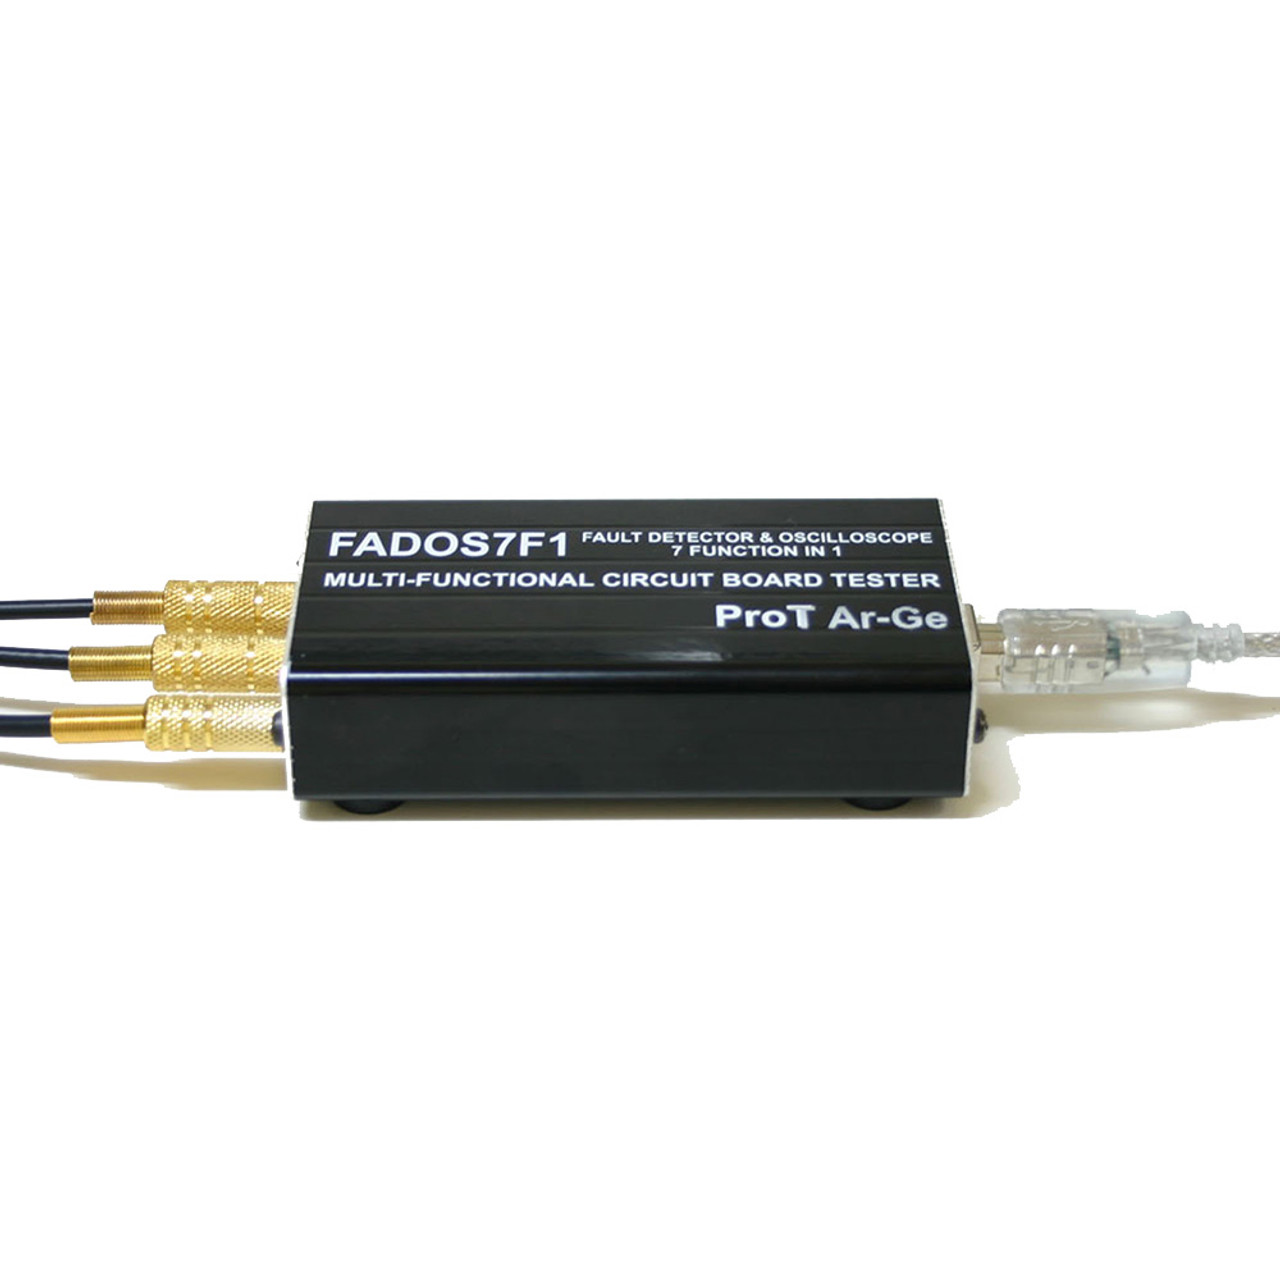 ProT Ar-Ge FADOS7F1 Fault Detector and Oscilloscope, 10 V